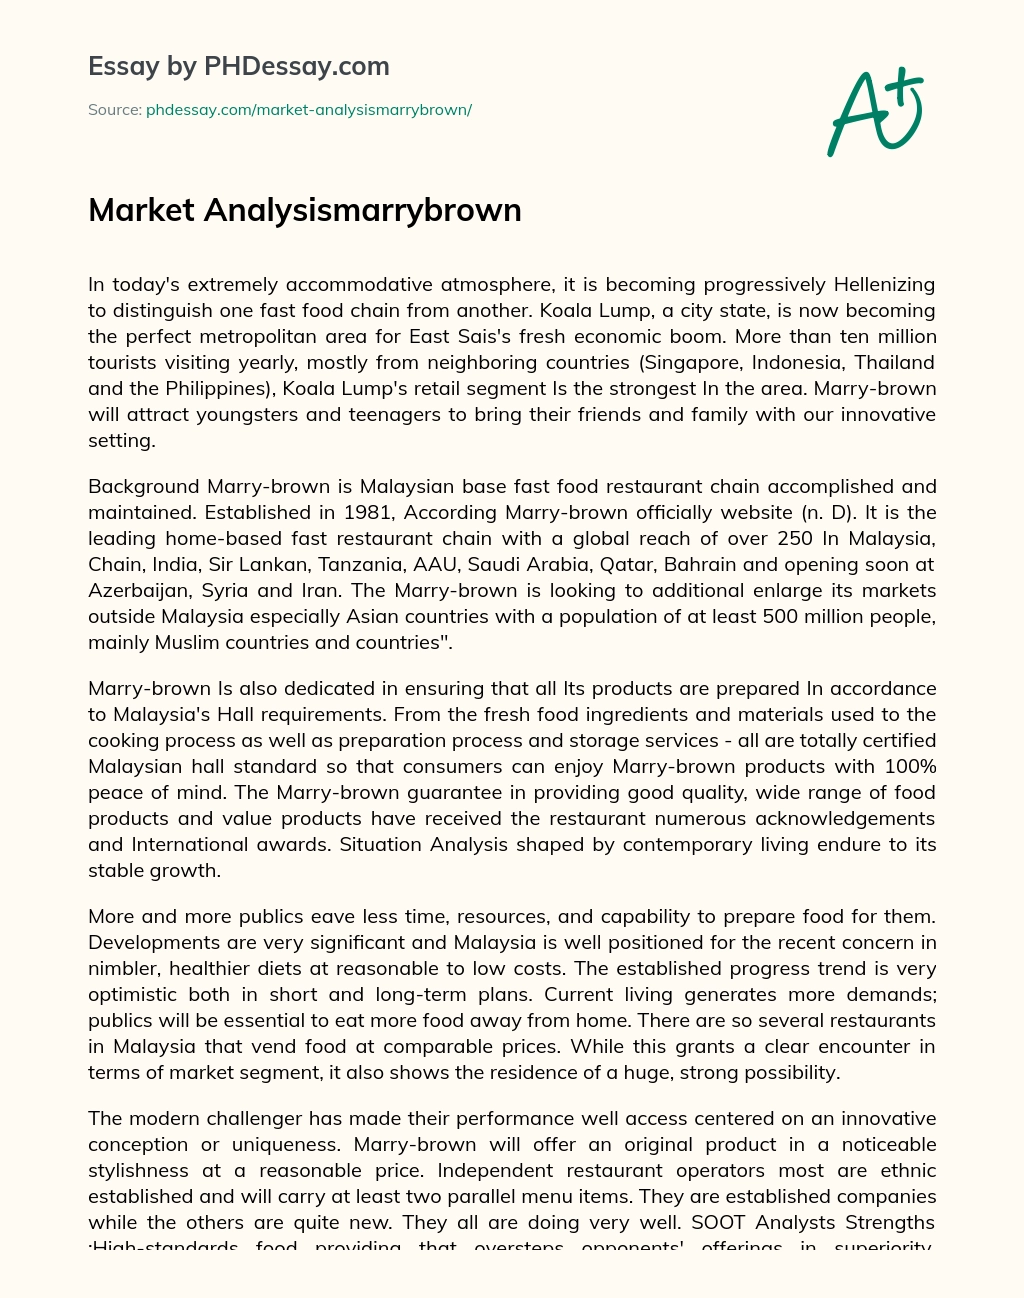 Market Analysismarrybrown essay